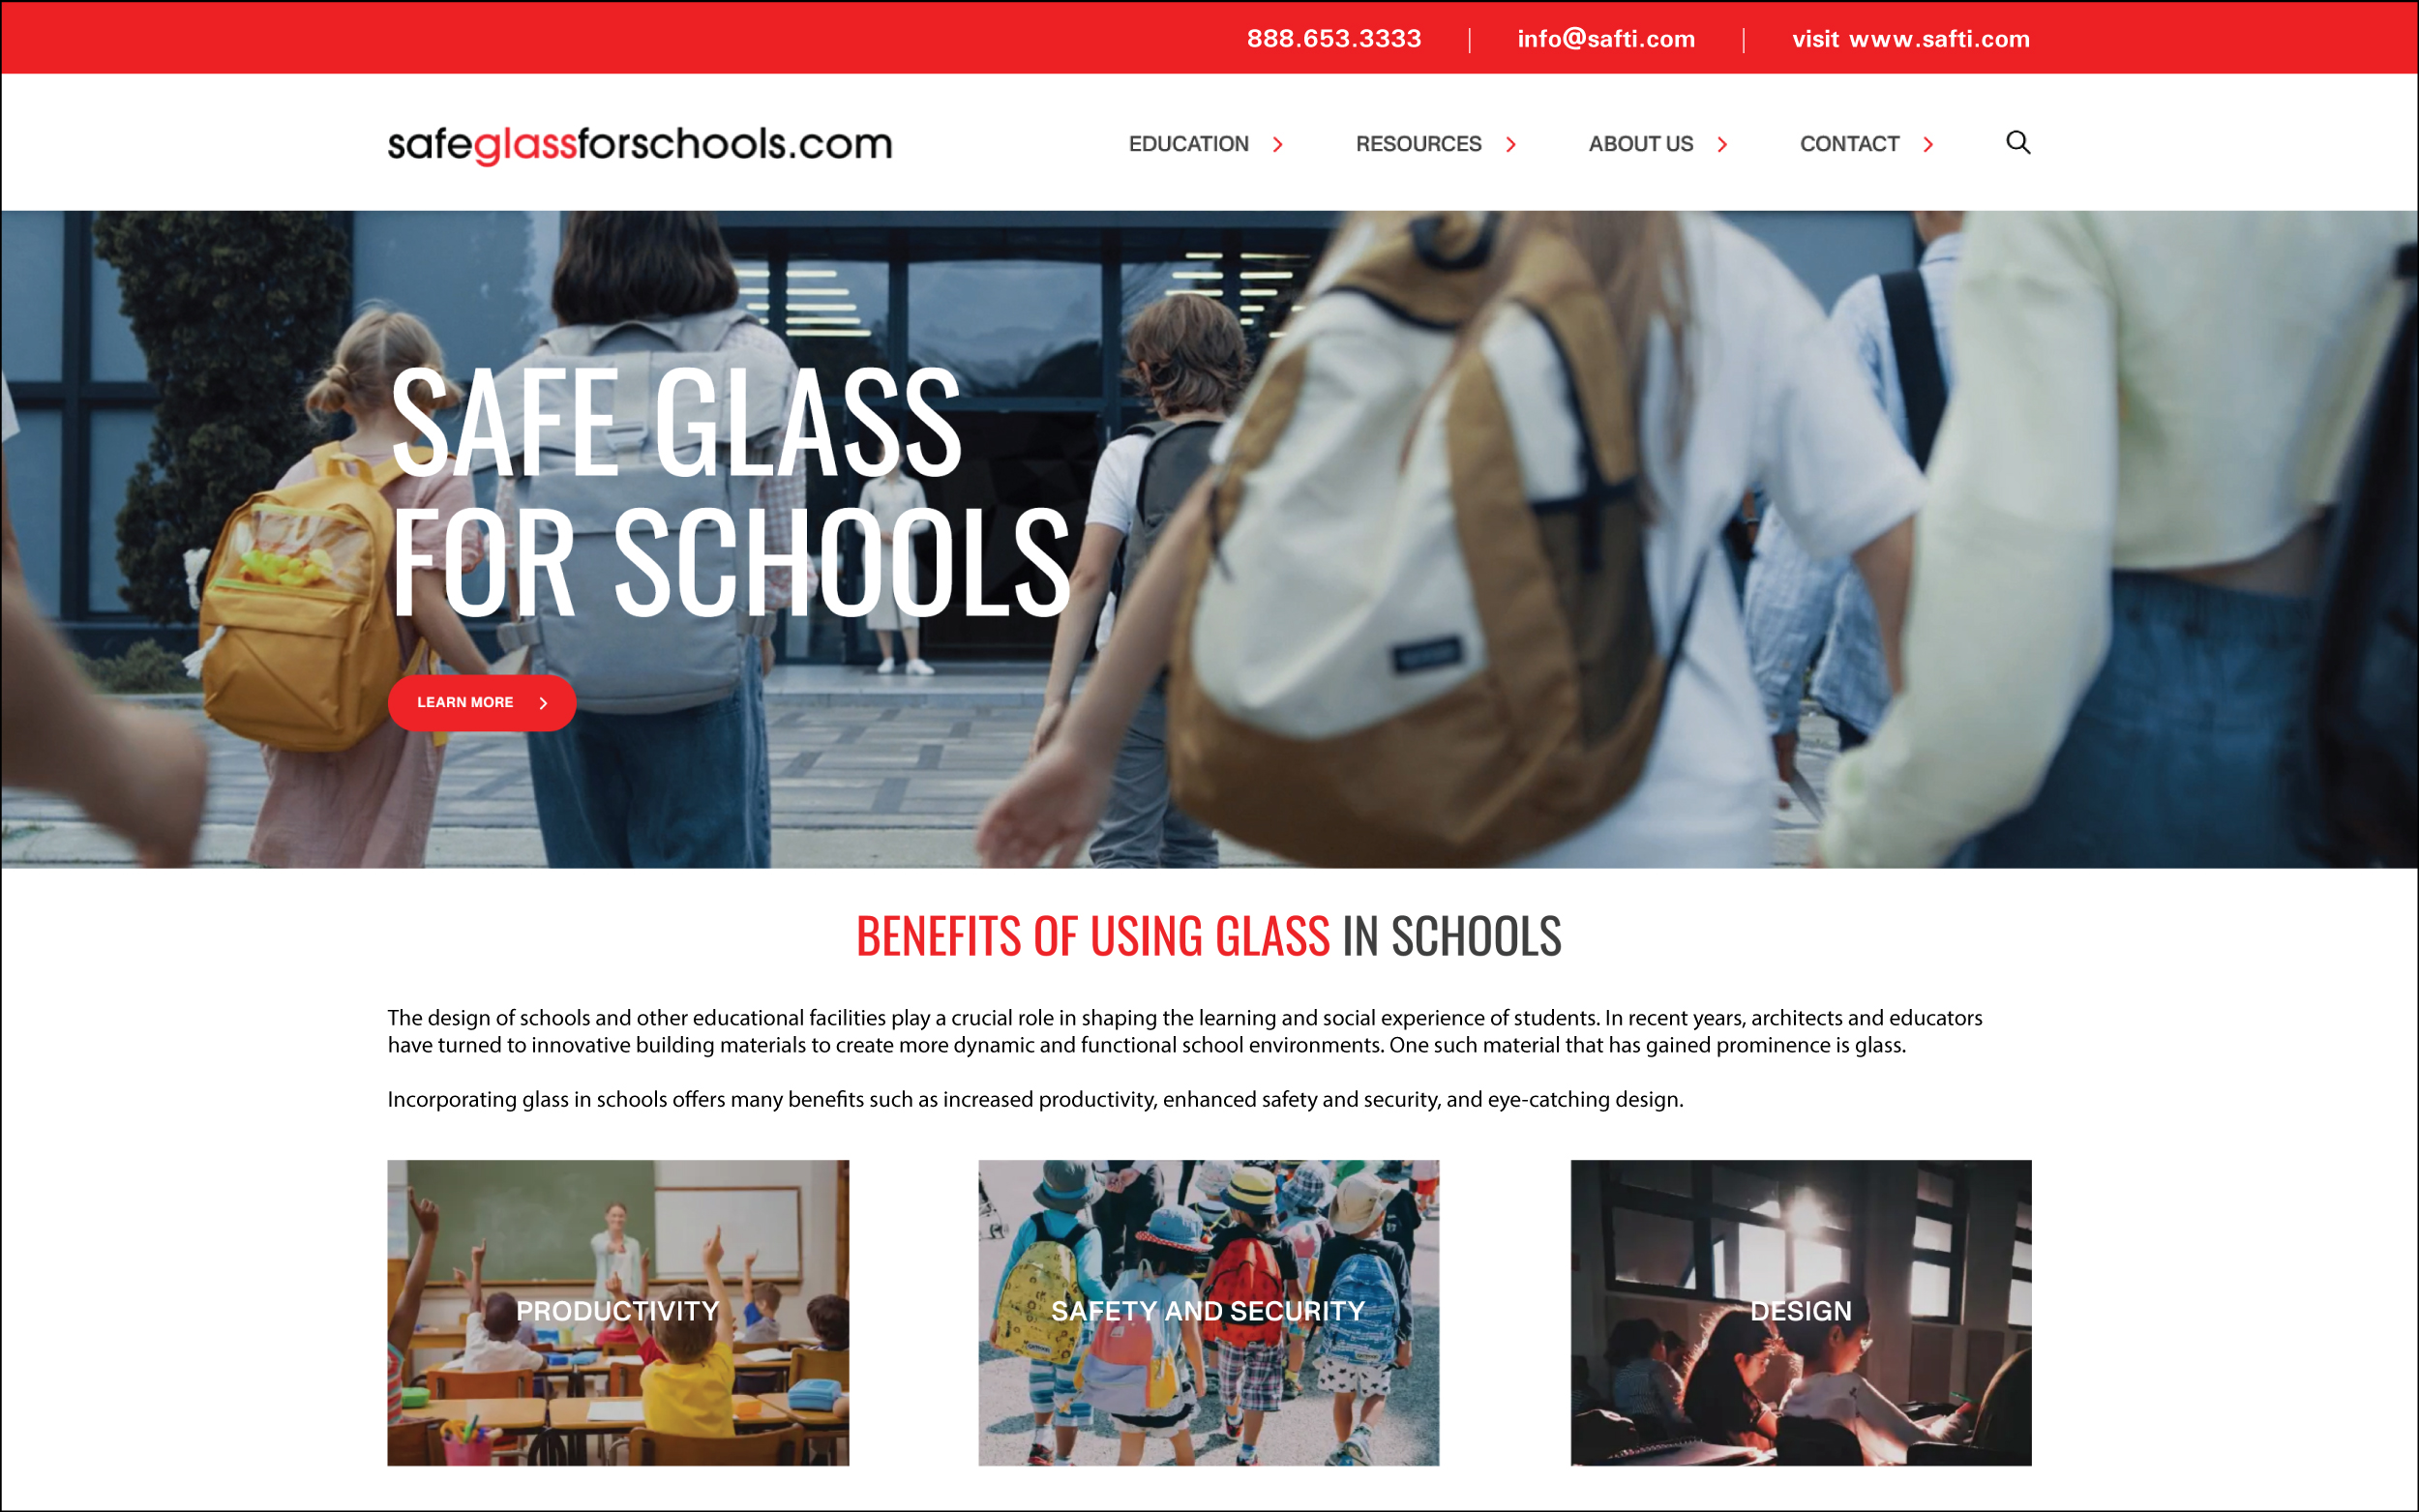 Safeglassforschools.com